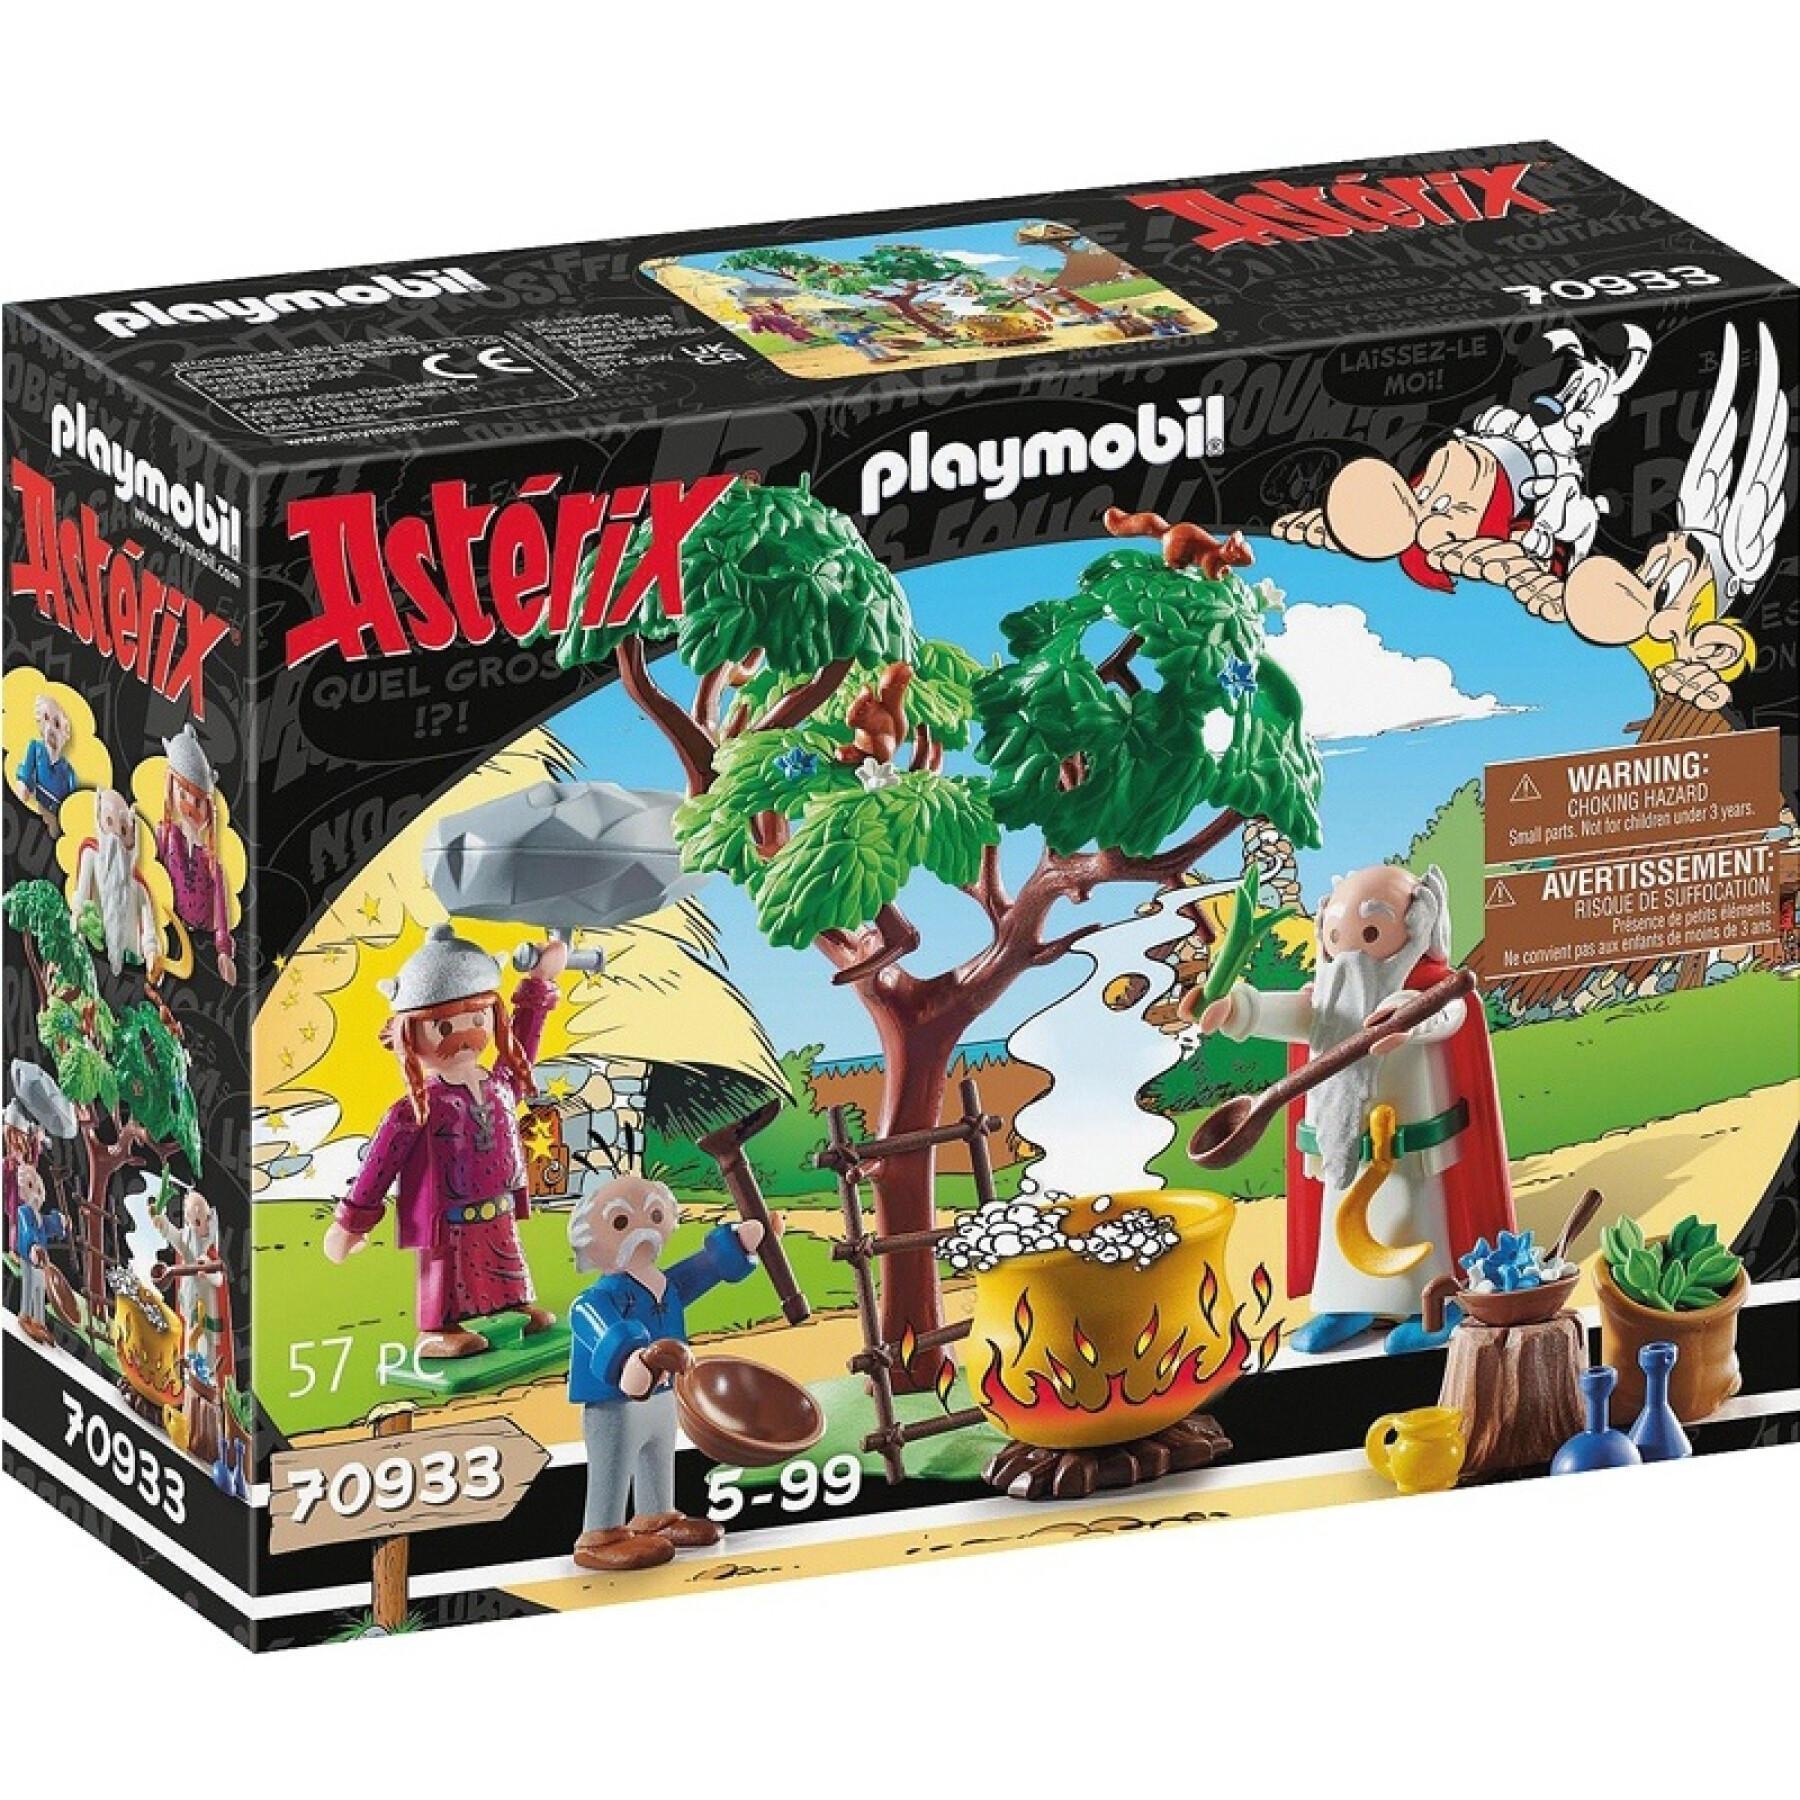 Imitation games asterix cauldron potion Playmobil Panoramix